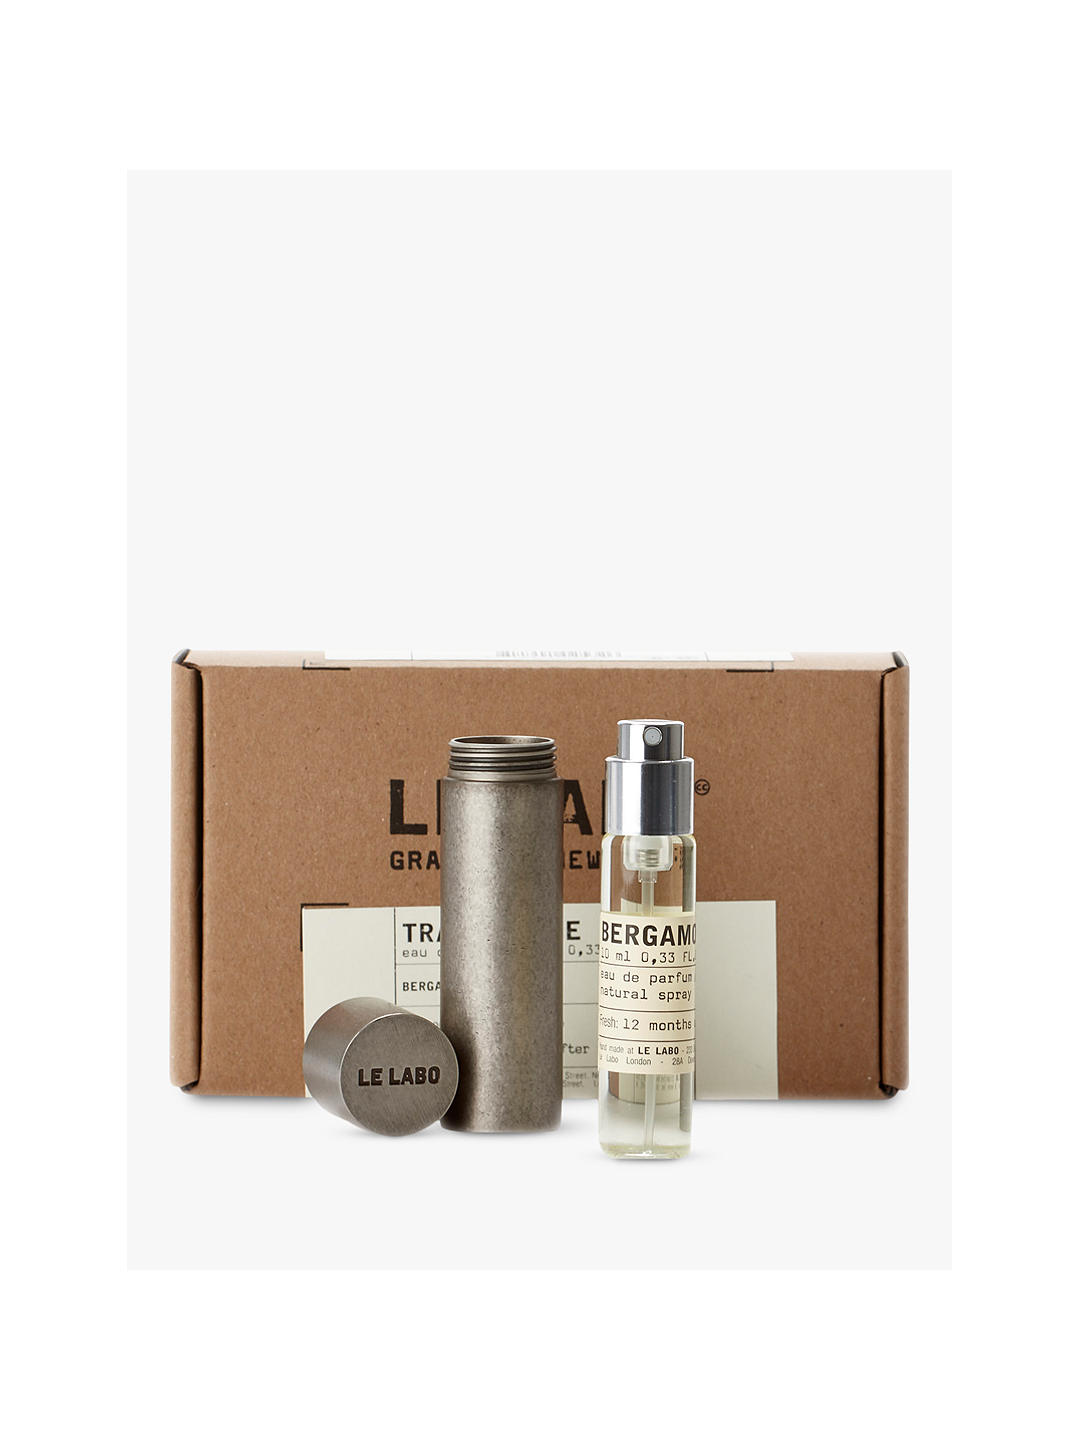 Le Labo Bergamote 22 Eau de Parfum Travel Kit, 10ml 1